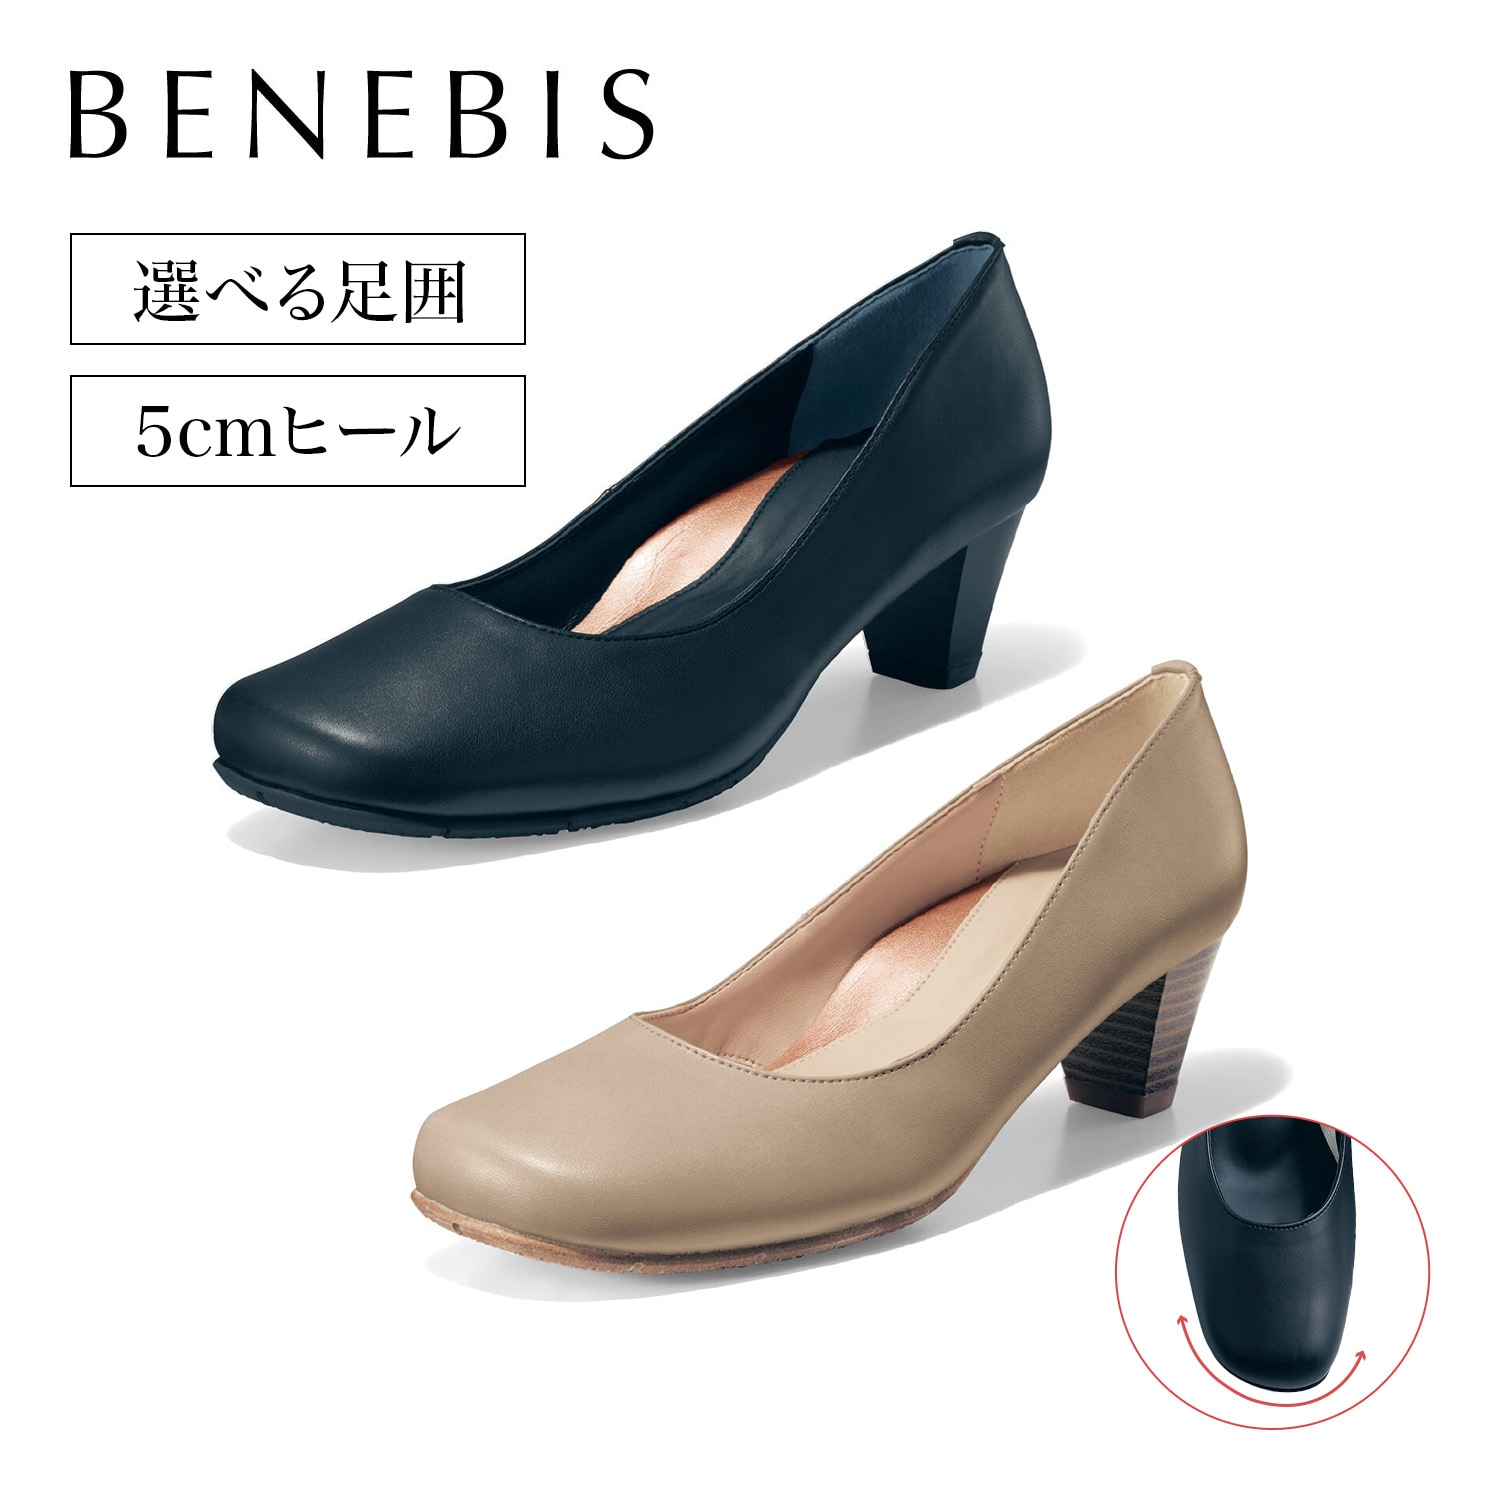 【ベネビス/BENEBIS】オブリークパンプス5cm【5ワイズから選べる】